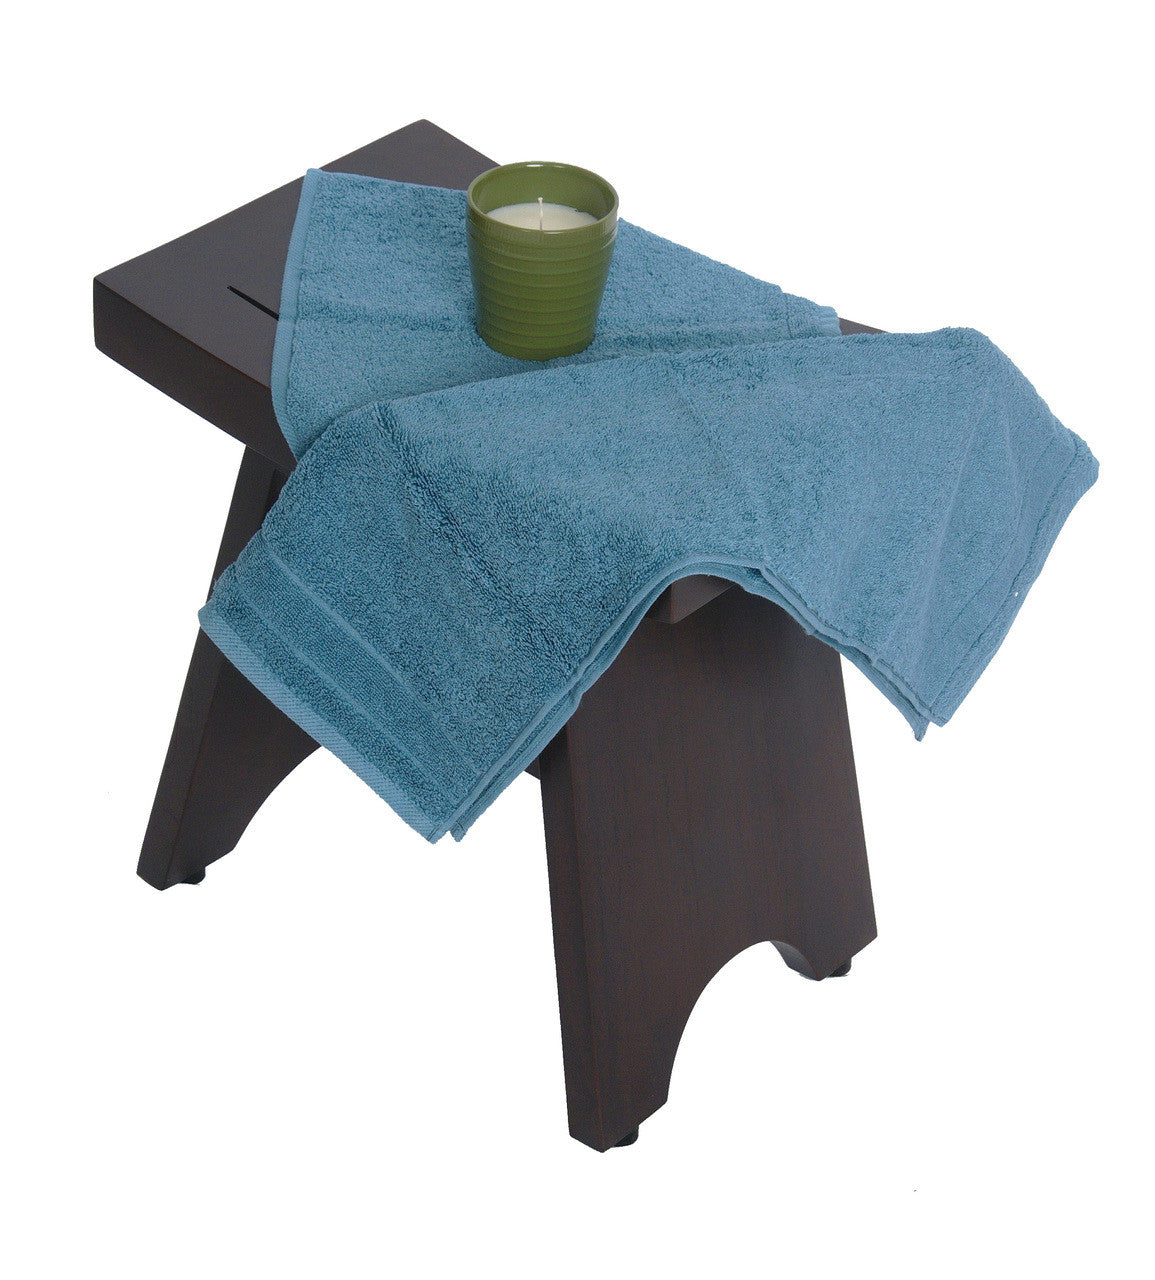 DecoTeak® Serenity® 18" Teak Wood Shower Bench in Woodland Brown Finish